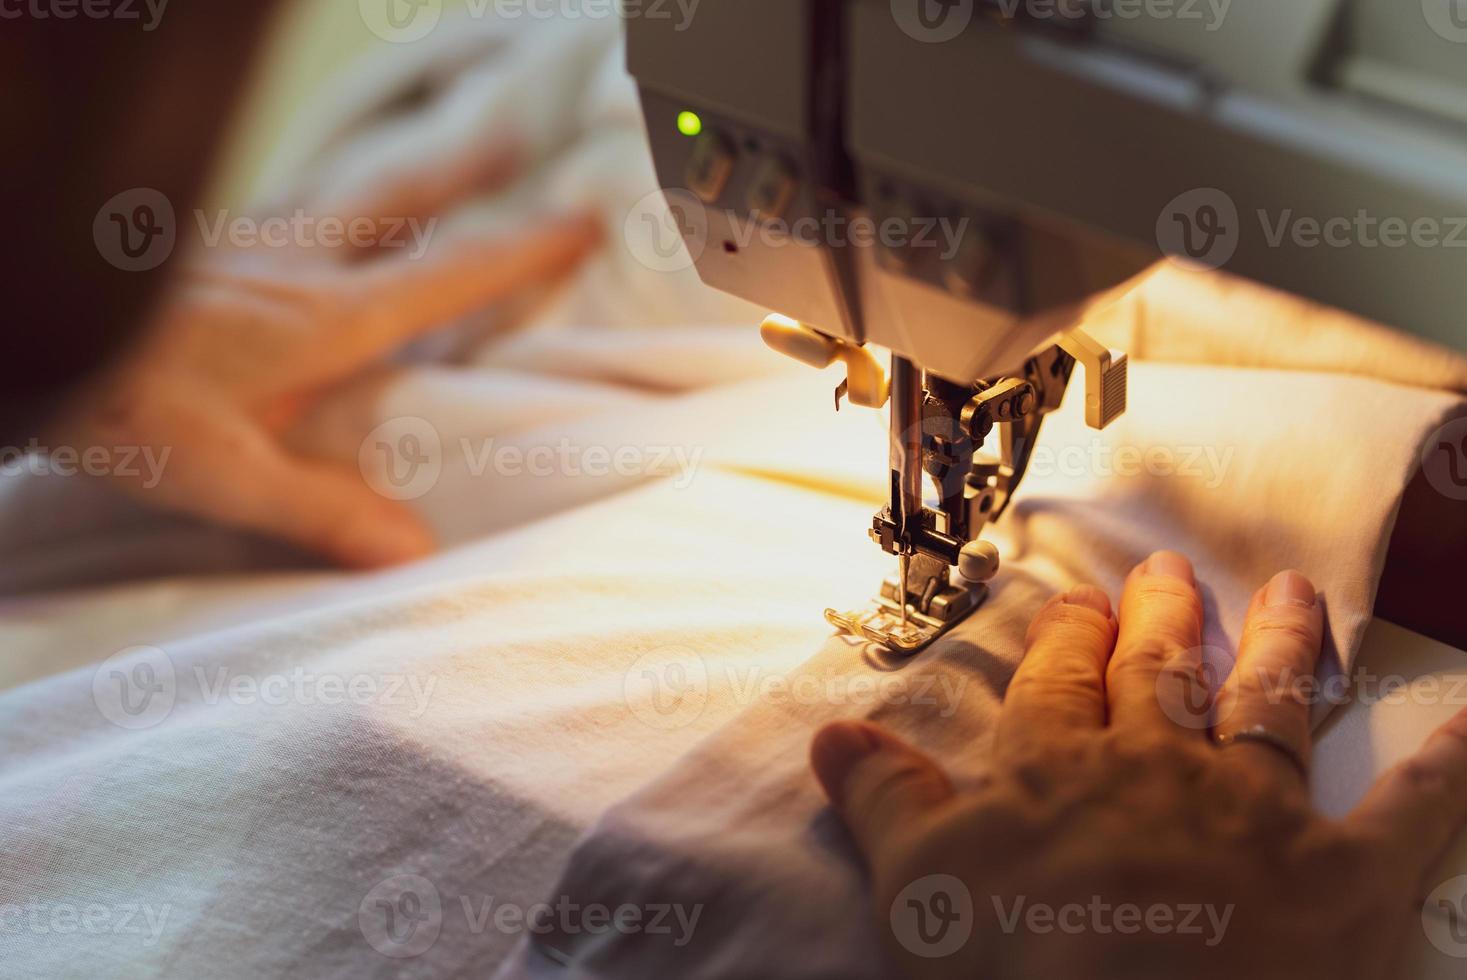 feche as mãos da mulher sênior usando a máquina de costura para costurar roupas em casa foto